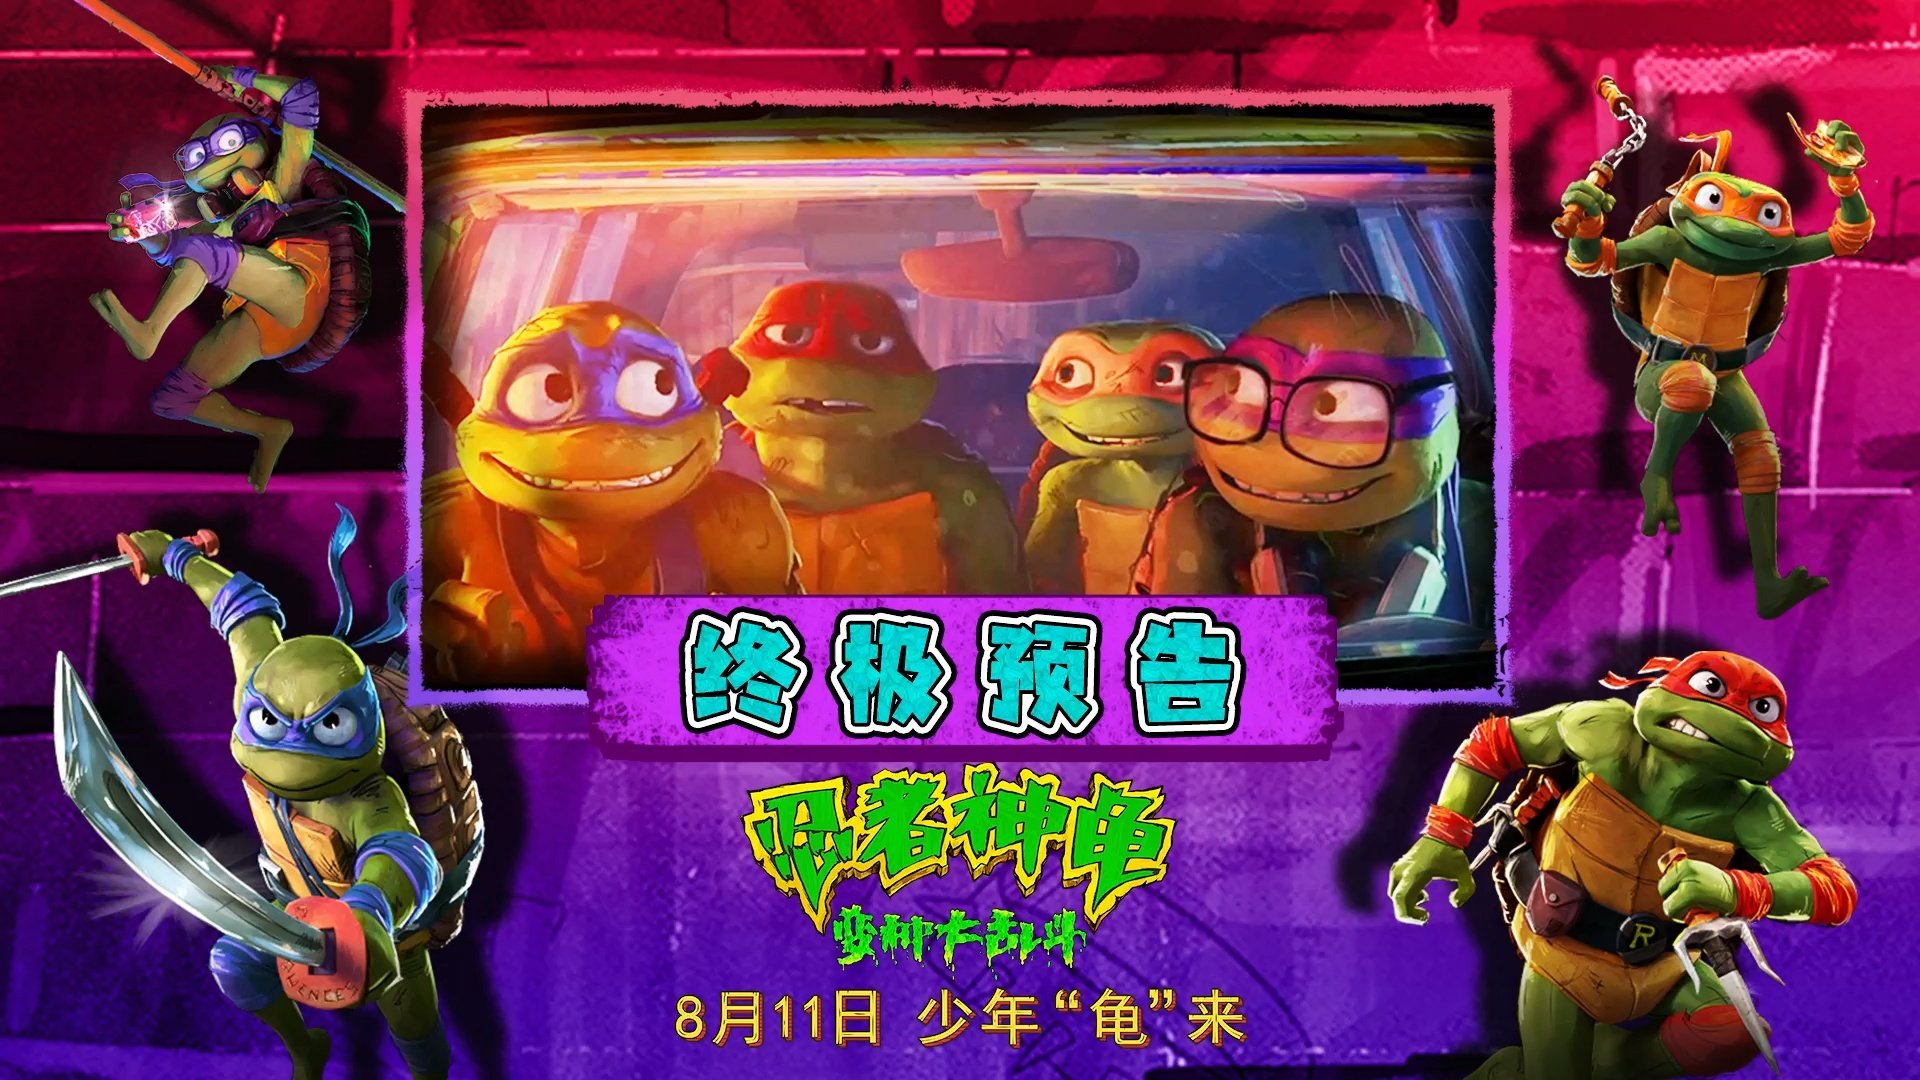 忍者神龟”新一部动画大电影《忍者神龟：变种大乱斗》终极预告